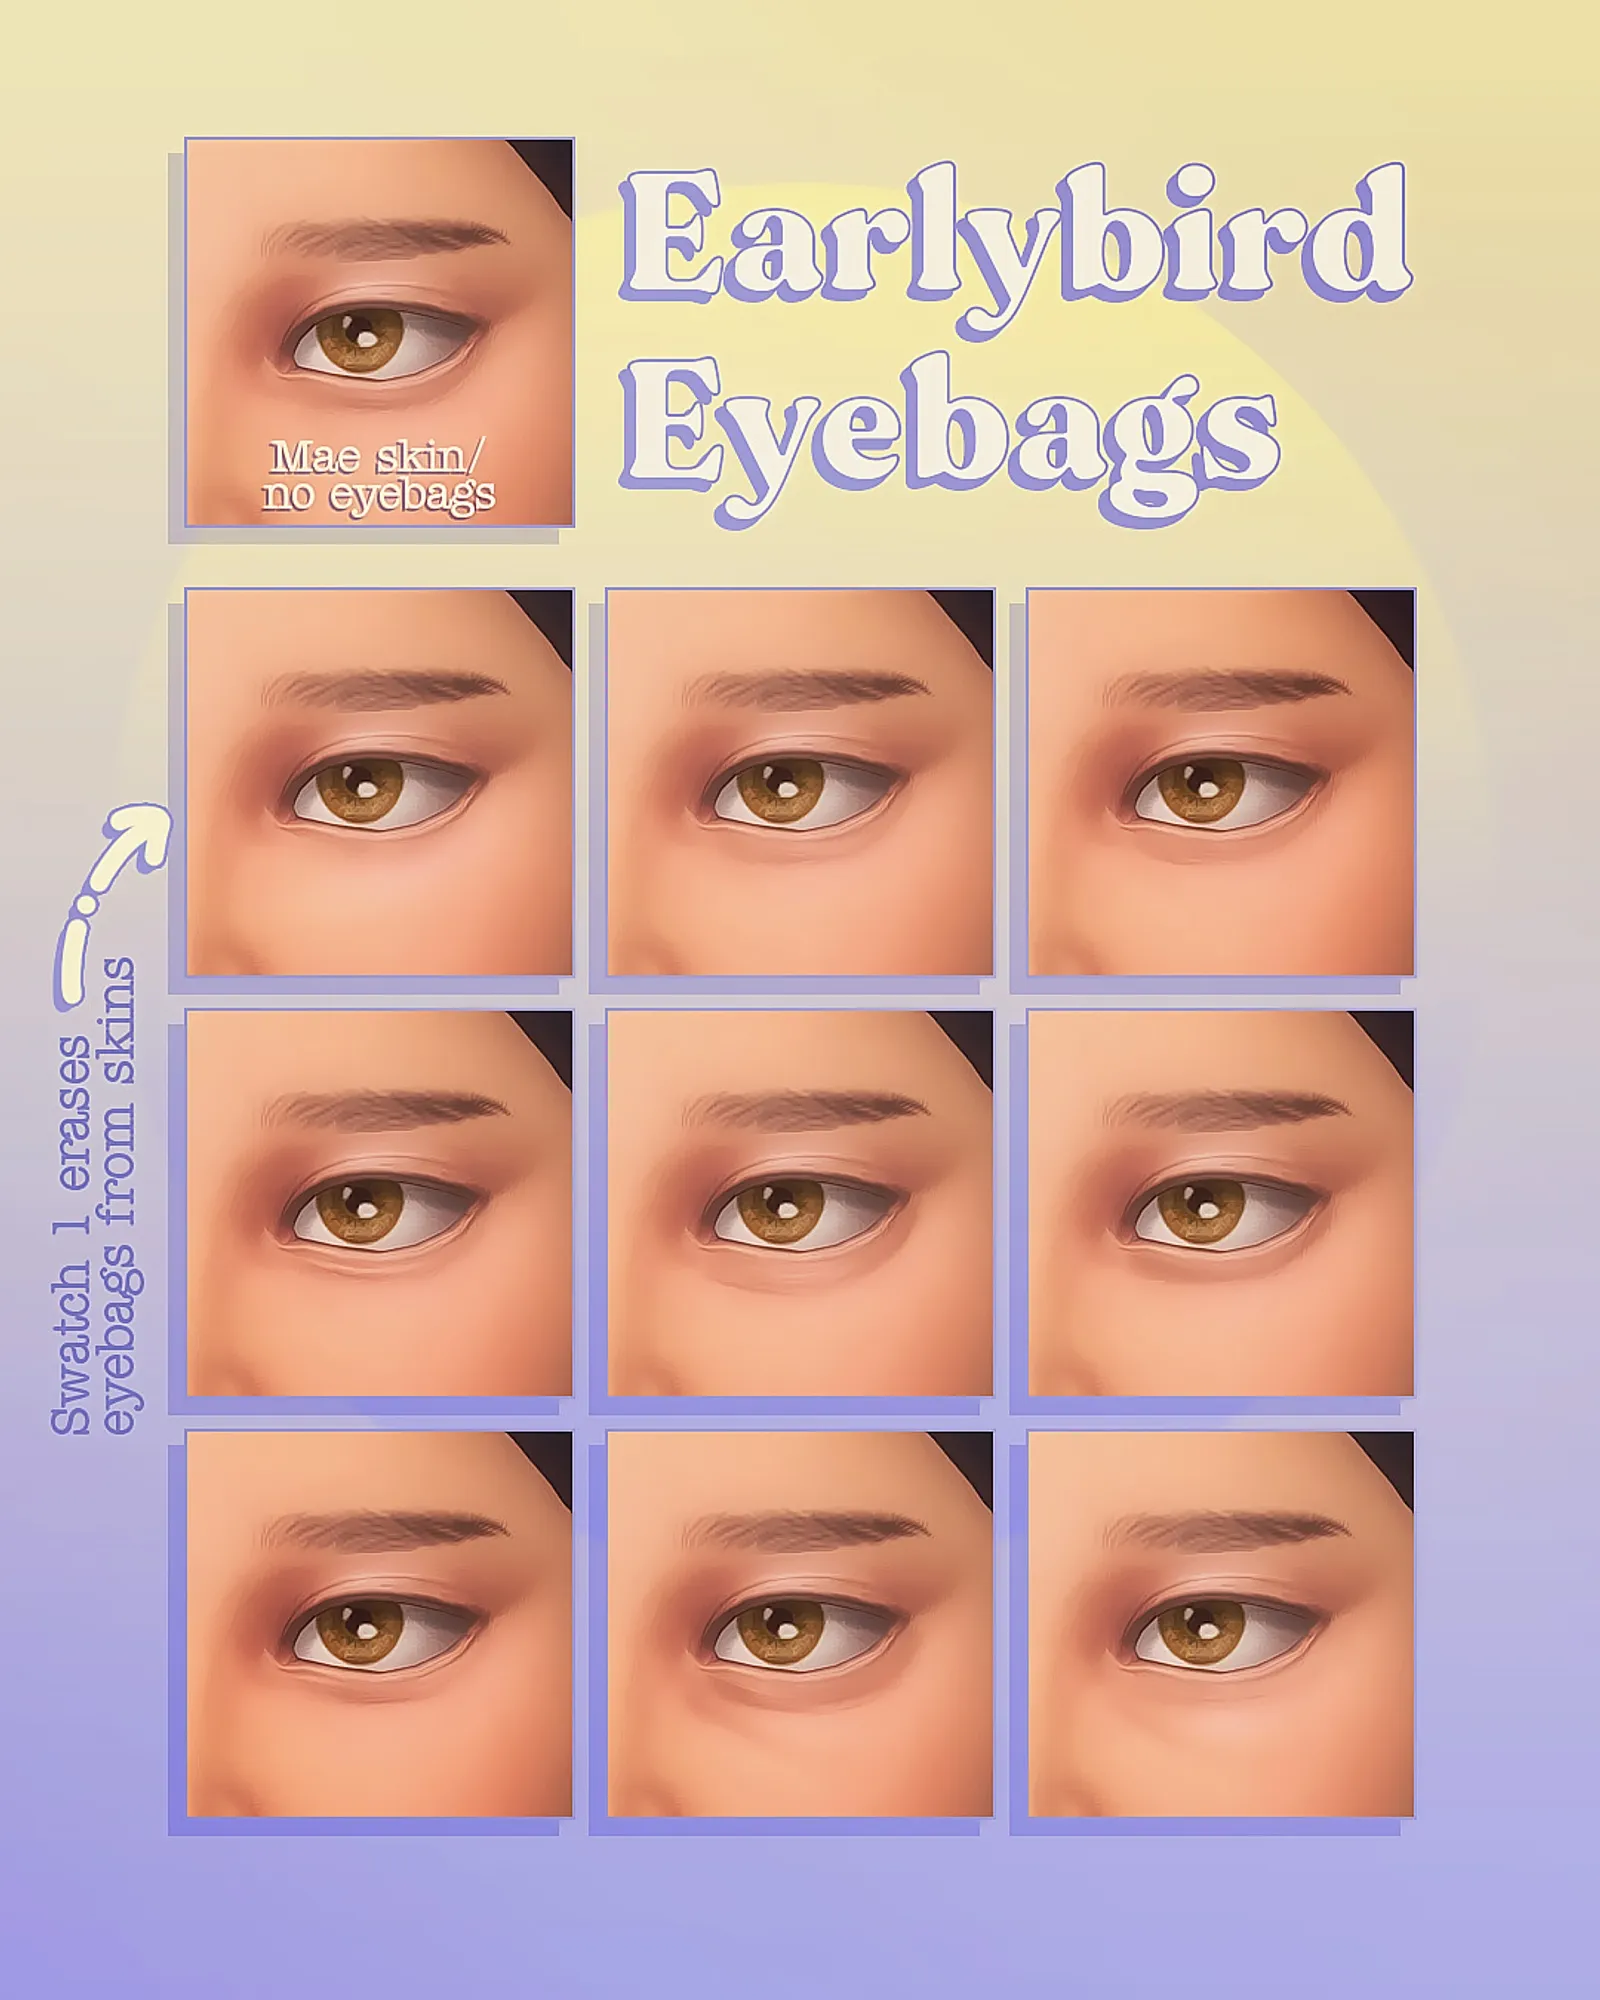 Earlybird eyebags